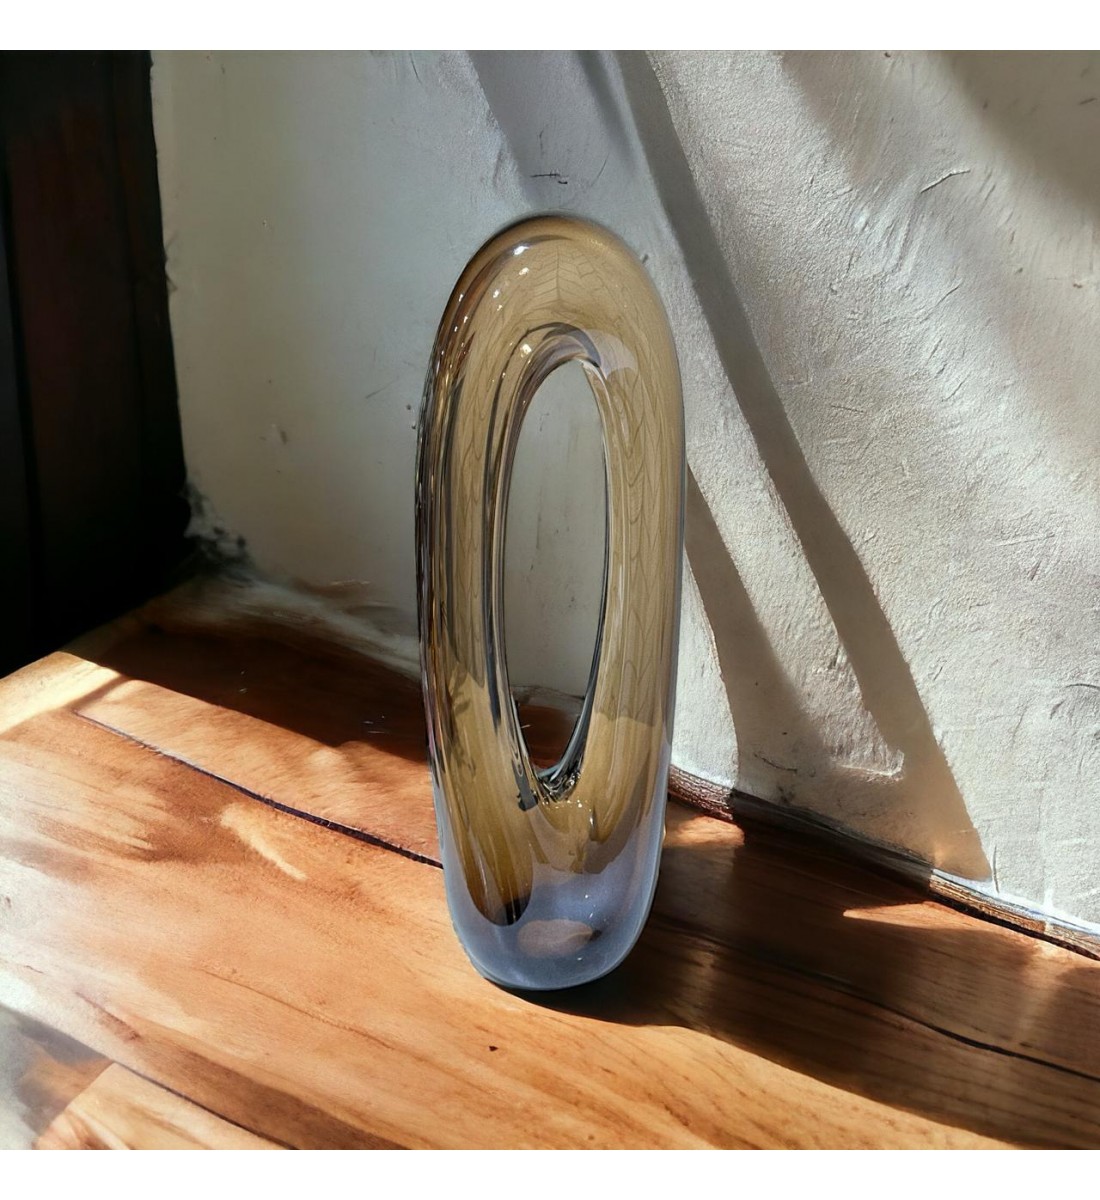 قطعة ديكور زجاج باليرينا تجريدية  لون بني - تيتانيا 40×24×8سم 